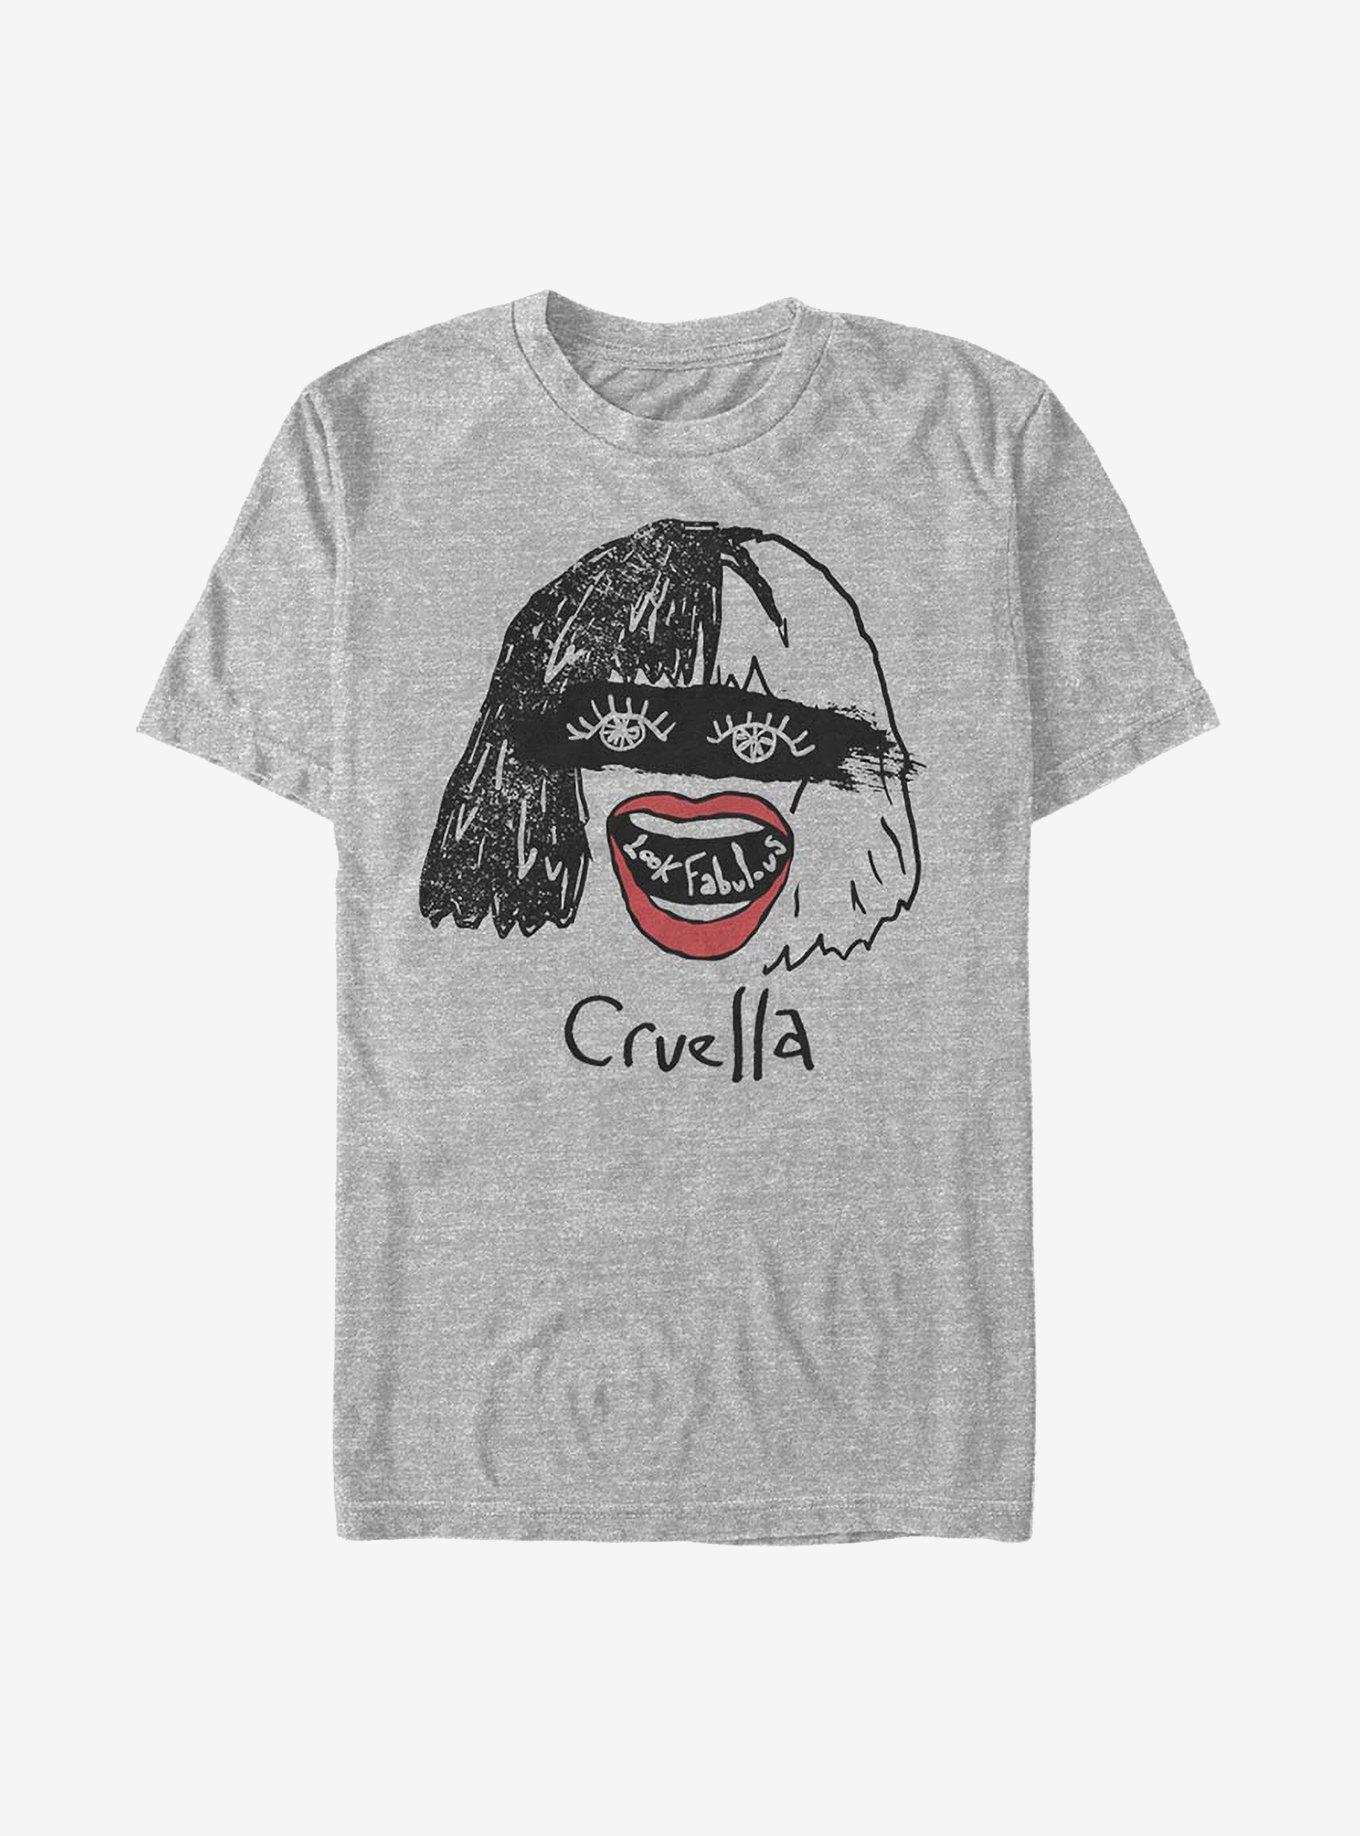 Disney Cruella Look Fabulous T-Shirt